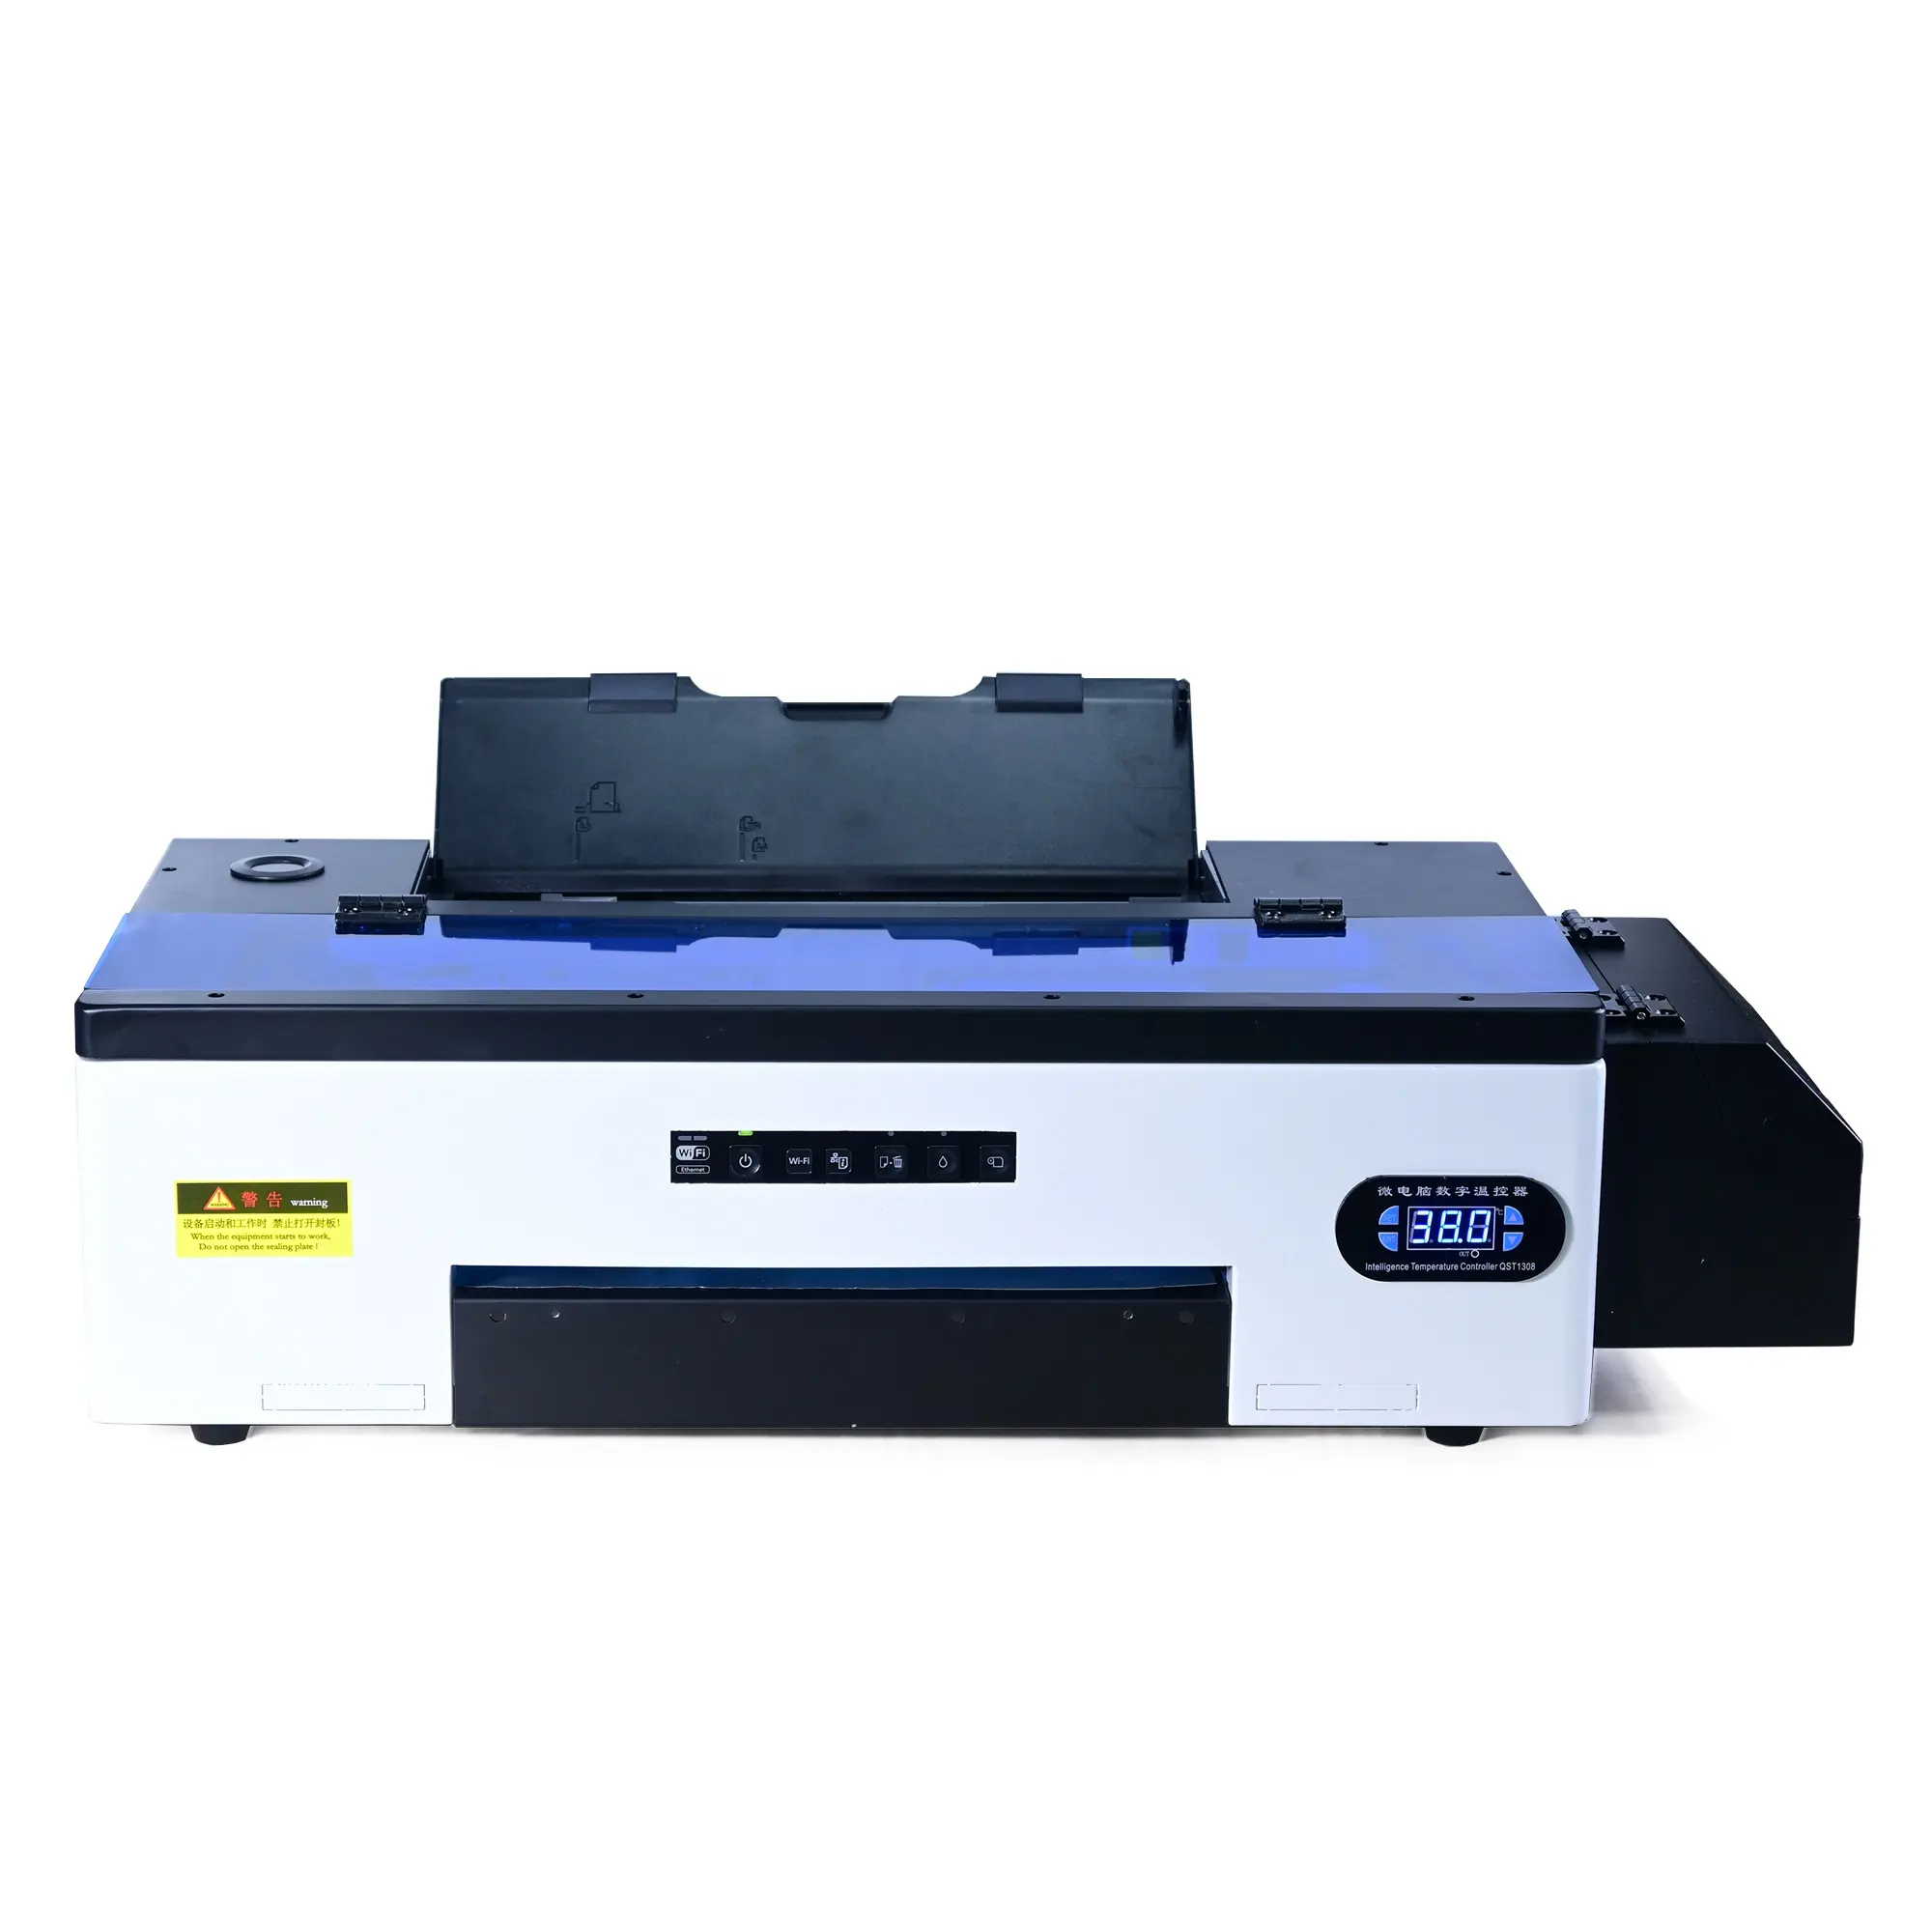 Boquillas de 1440 para impresora Epson R2000, cabezal de impresión DX5 de 8 colores, A3, DTF, modificado